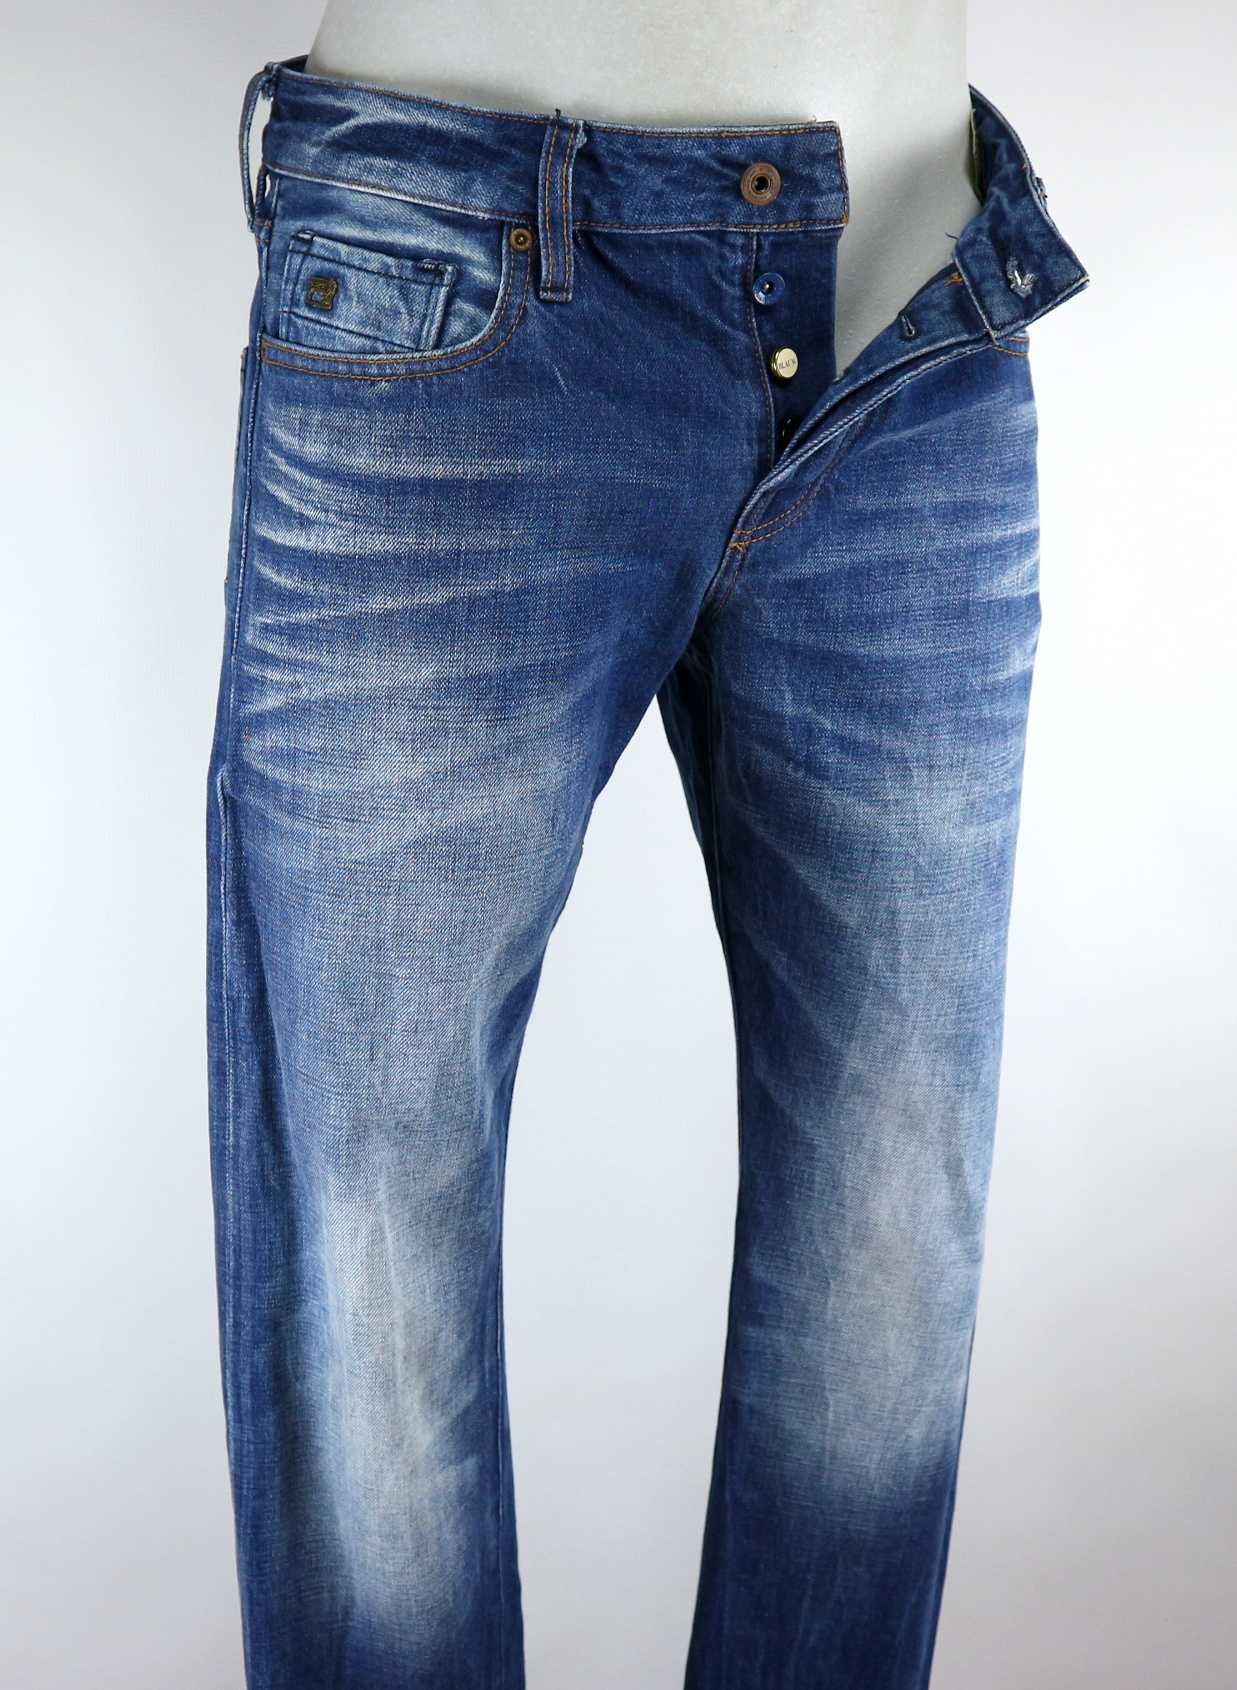 Scotch & Soda Ralston spodnie jeansy W32 L32 pas 2 x 42 cm